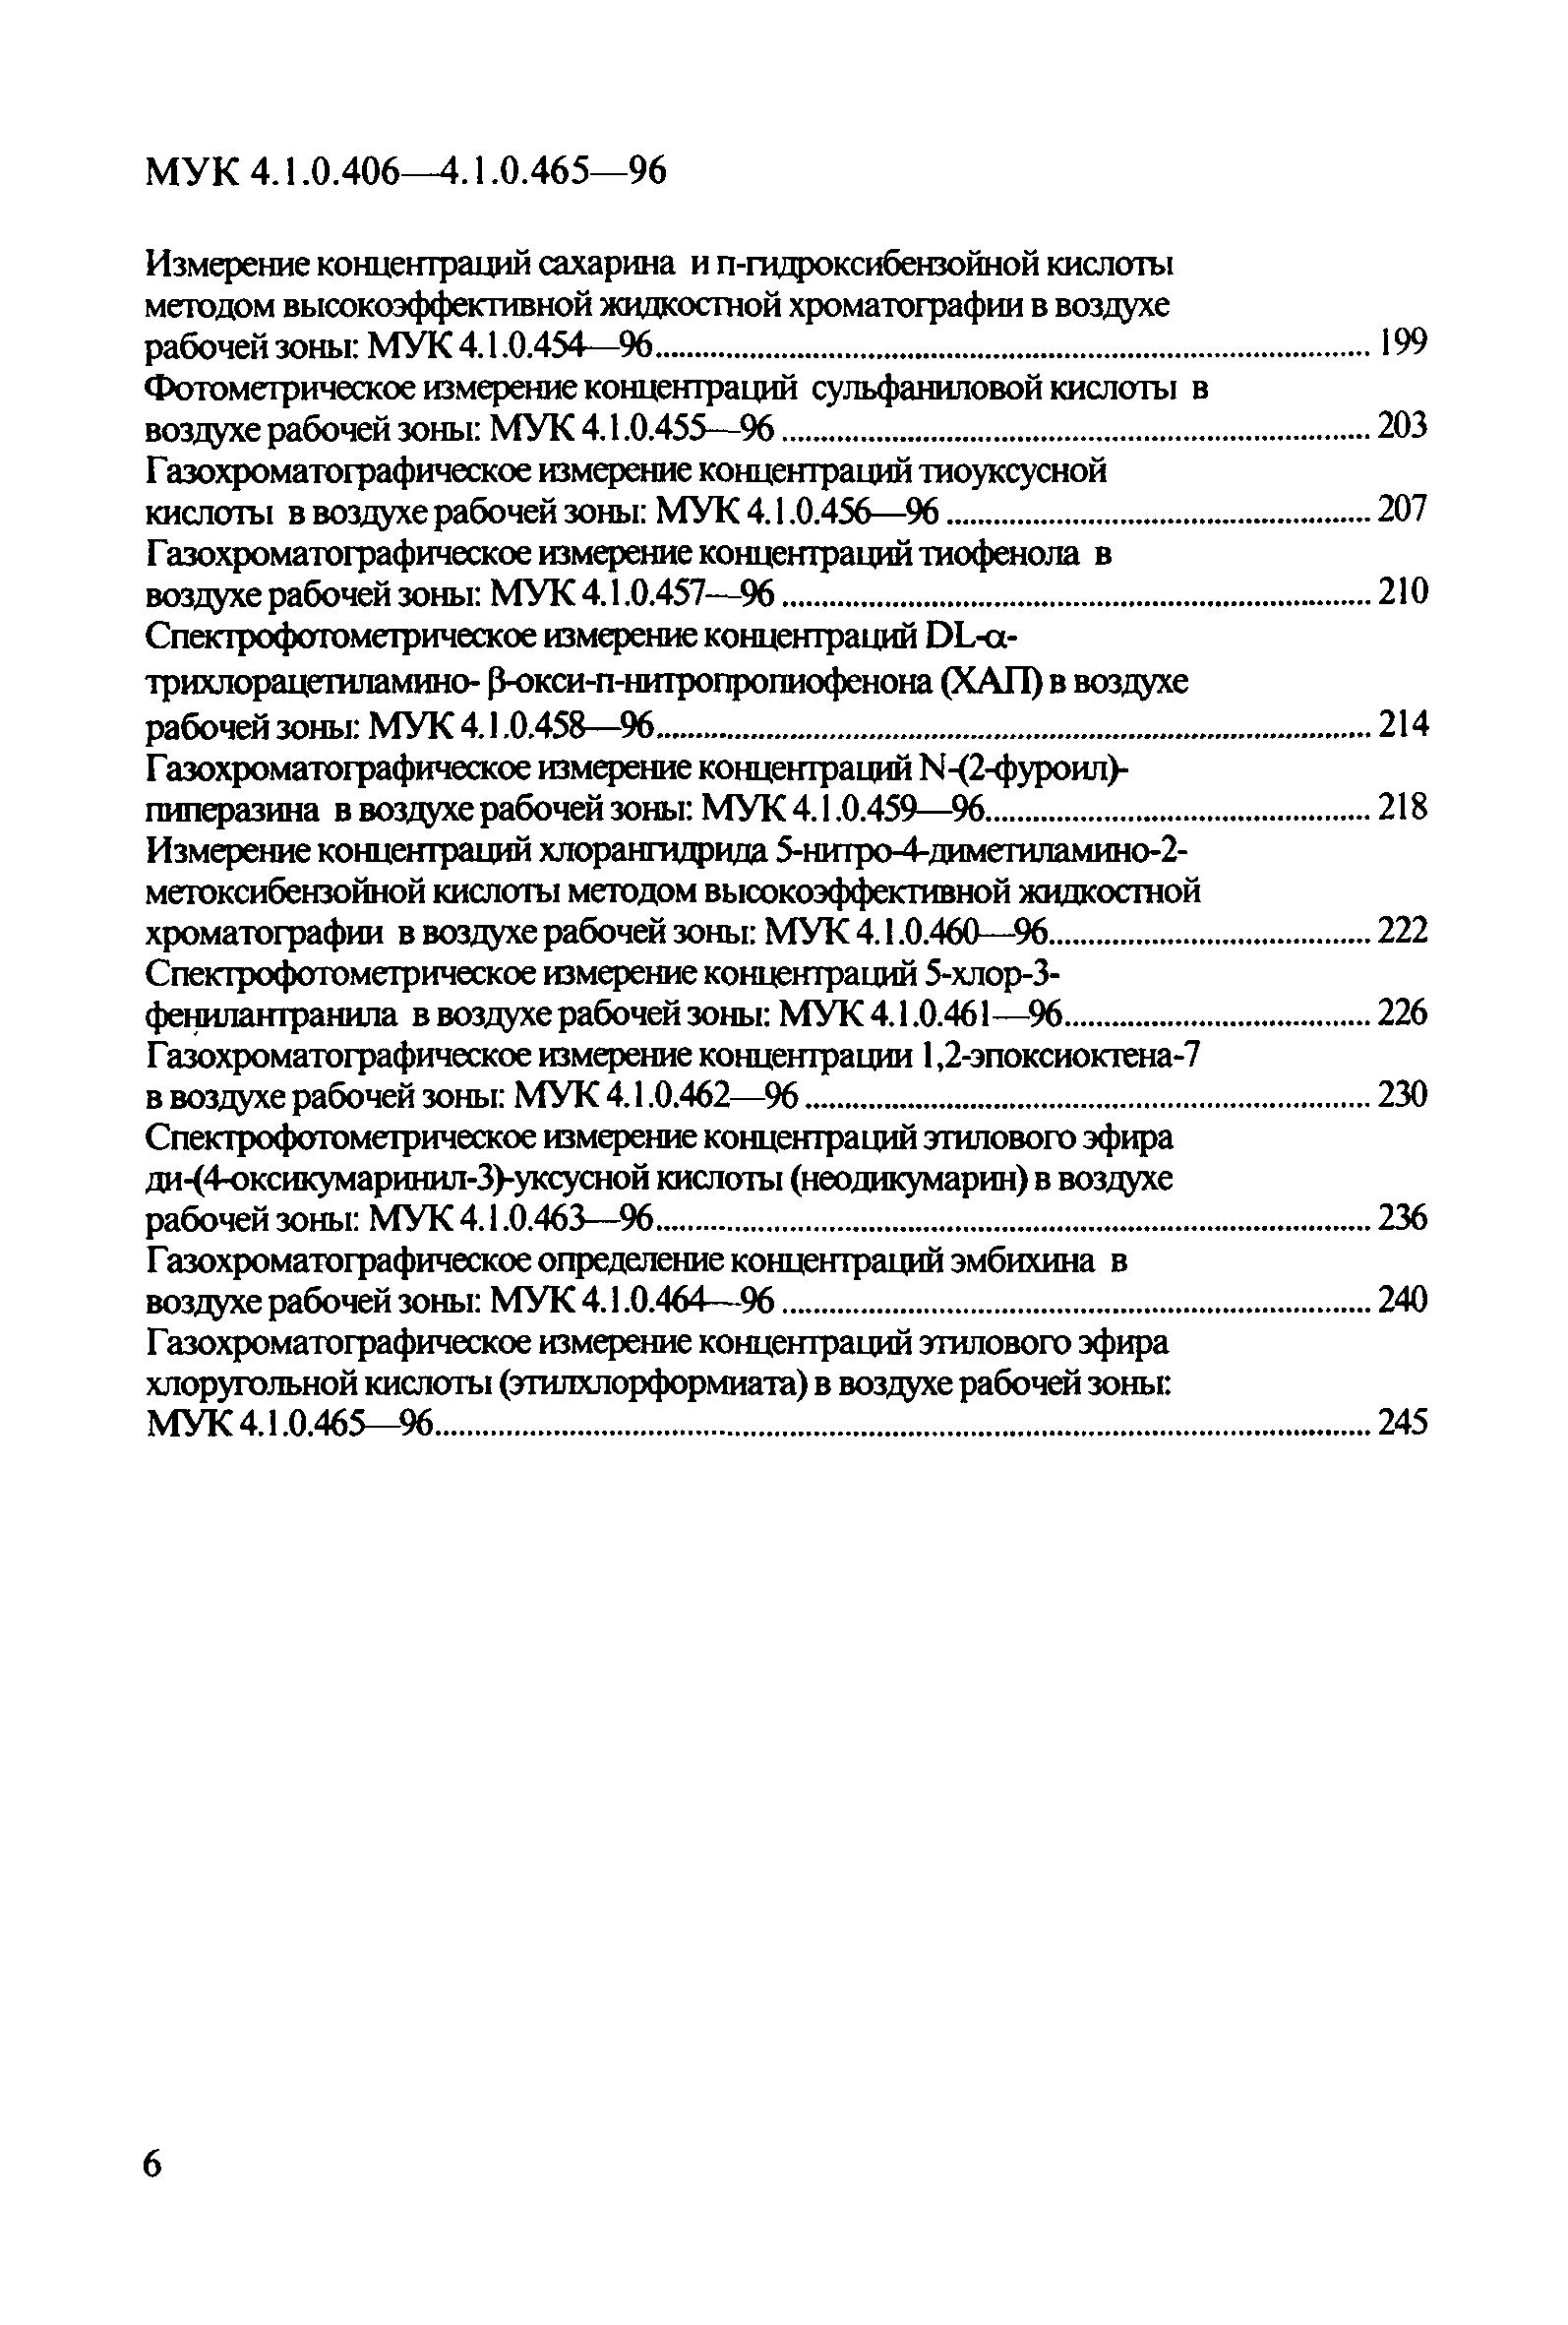 МУК 4.1.0.441-96